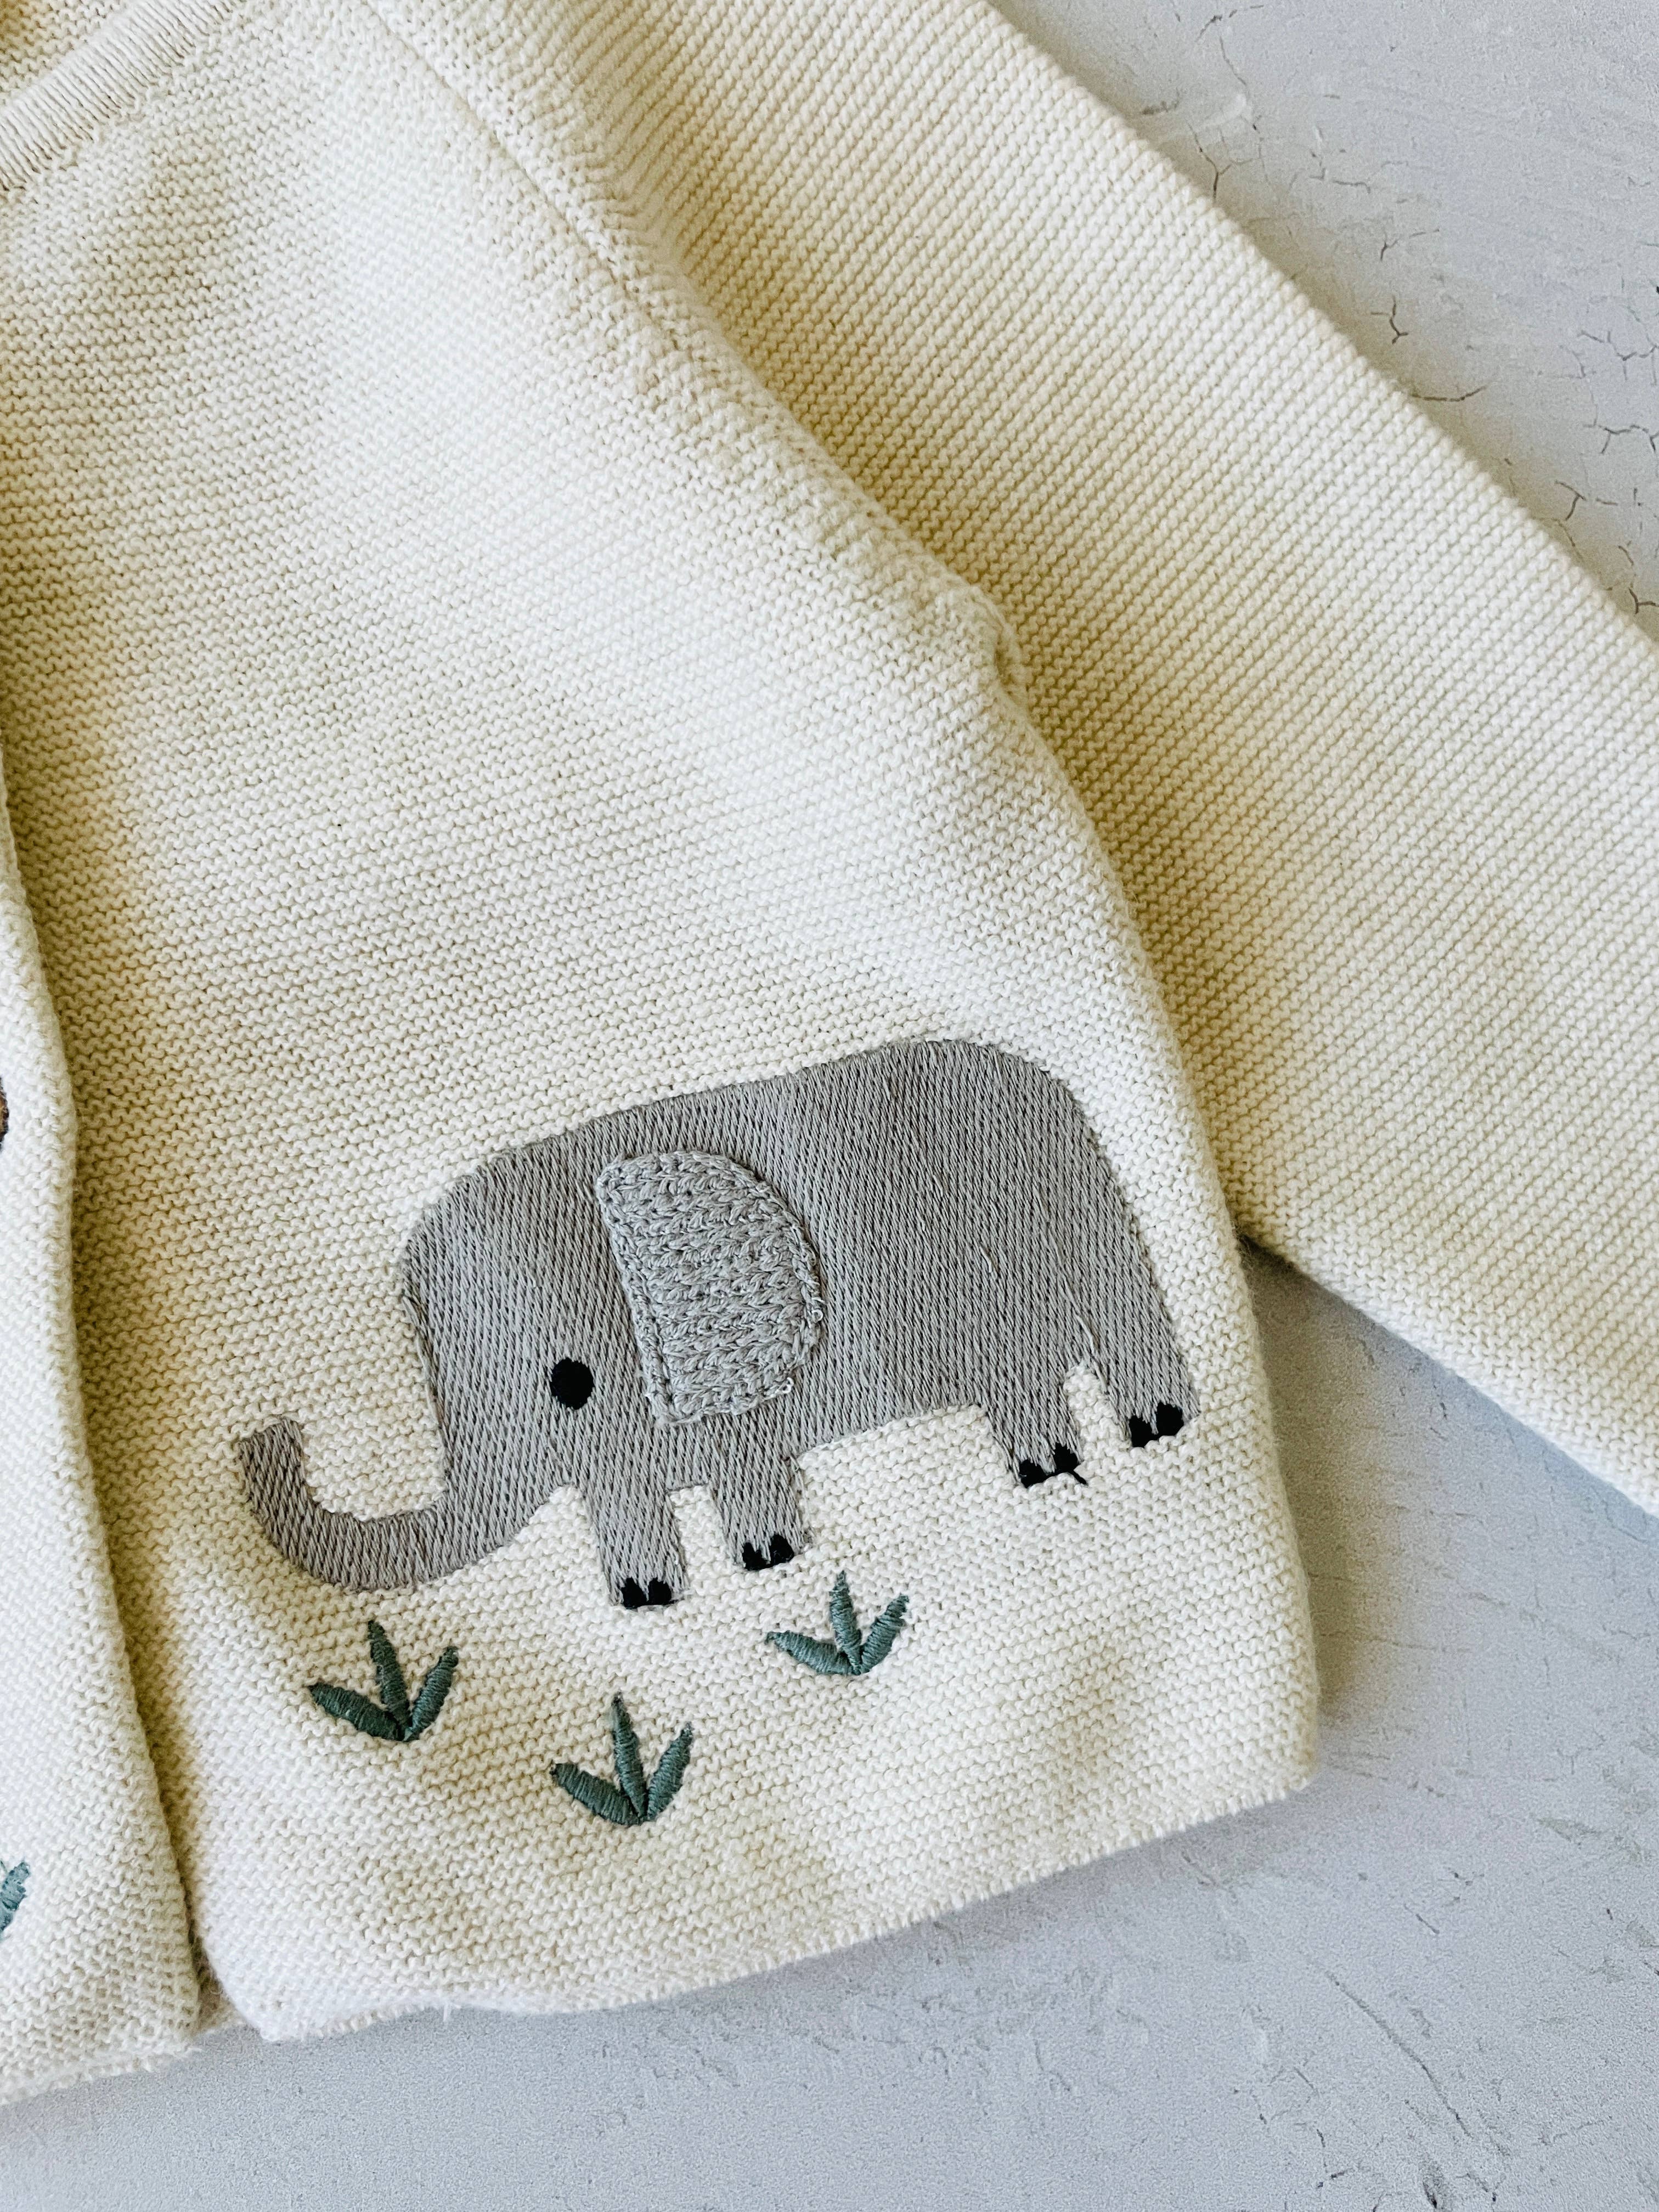 Animal Safari Embroidered Baby Cardigan Sweater